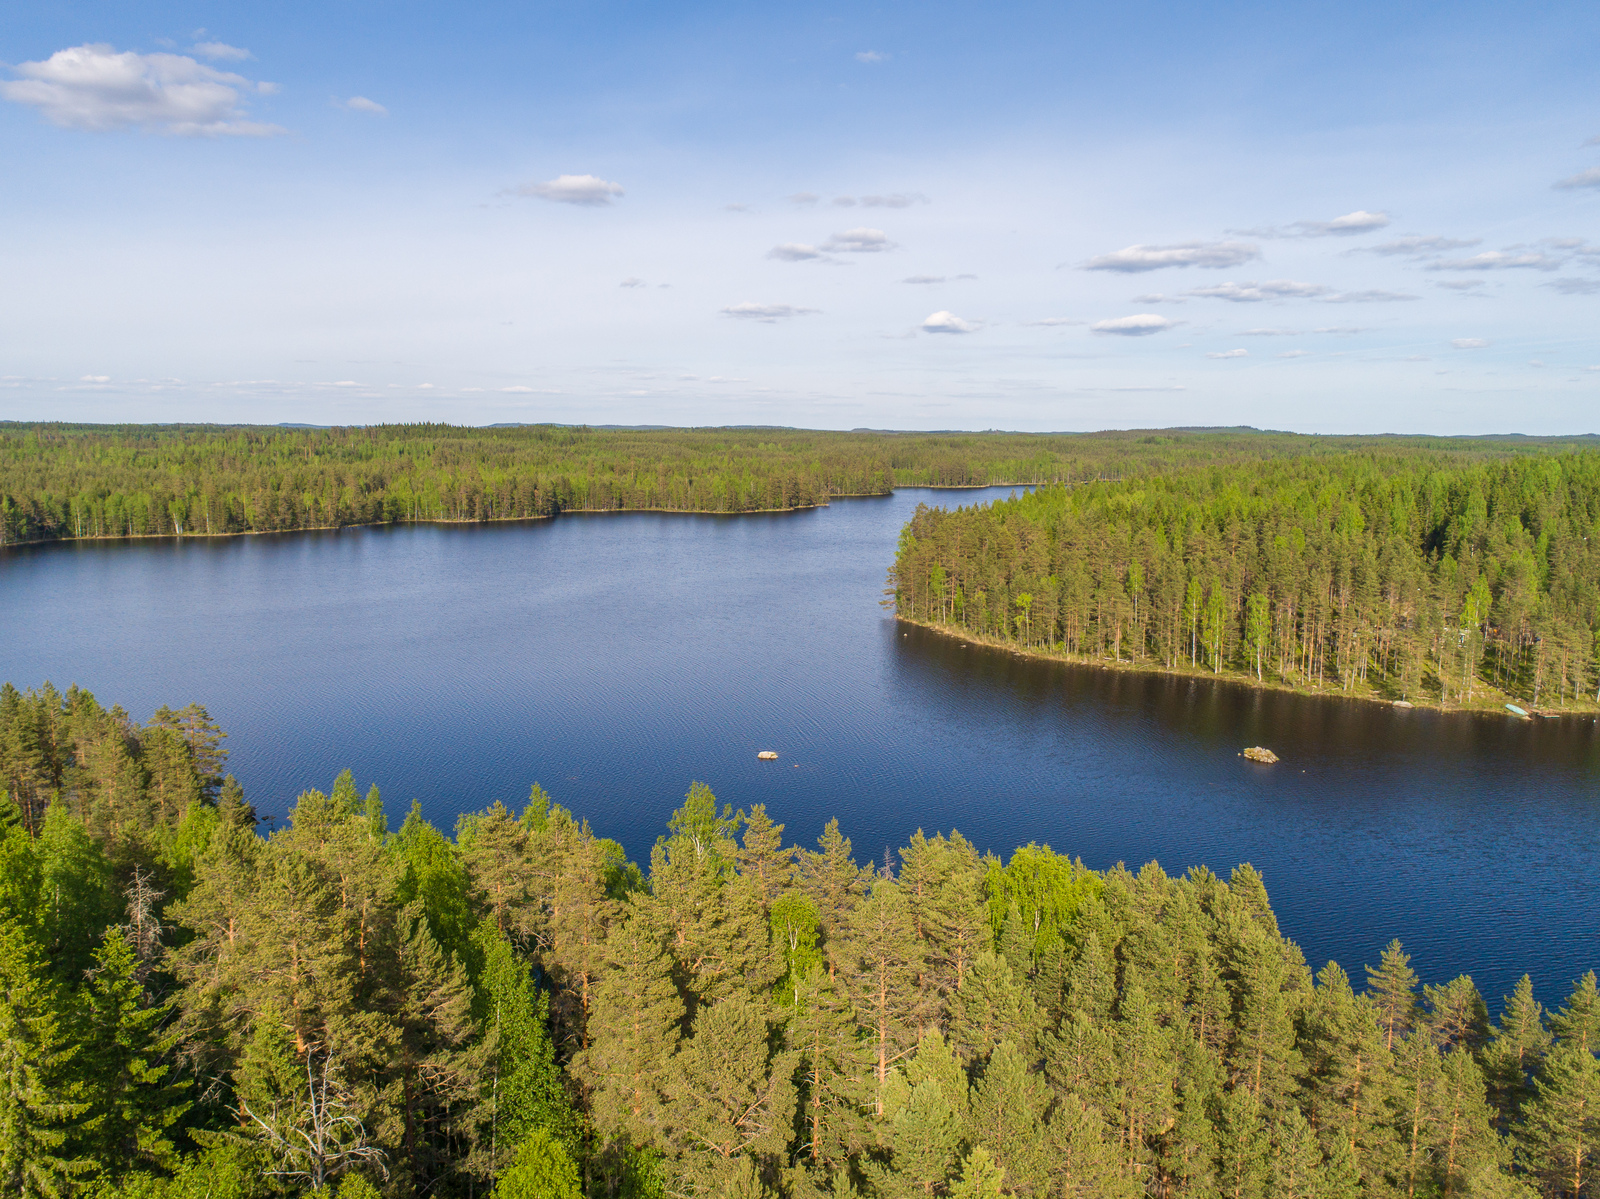 Kesämaisemassa metsät reunustavat suurta järveä, jossa on kaksi karikkoa. Ilmakuva.